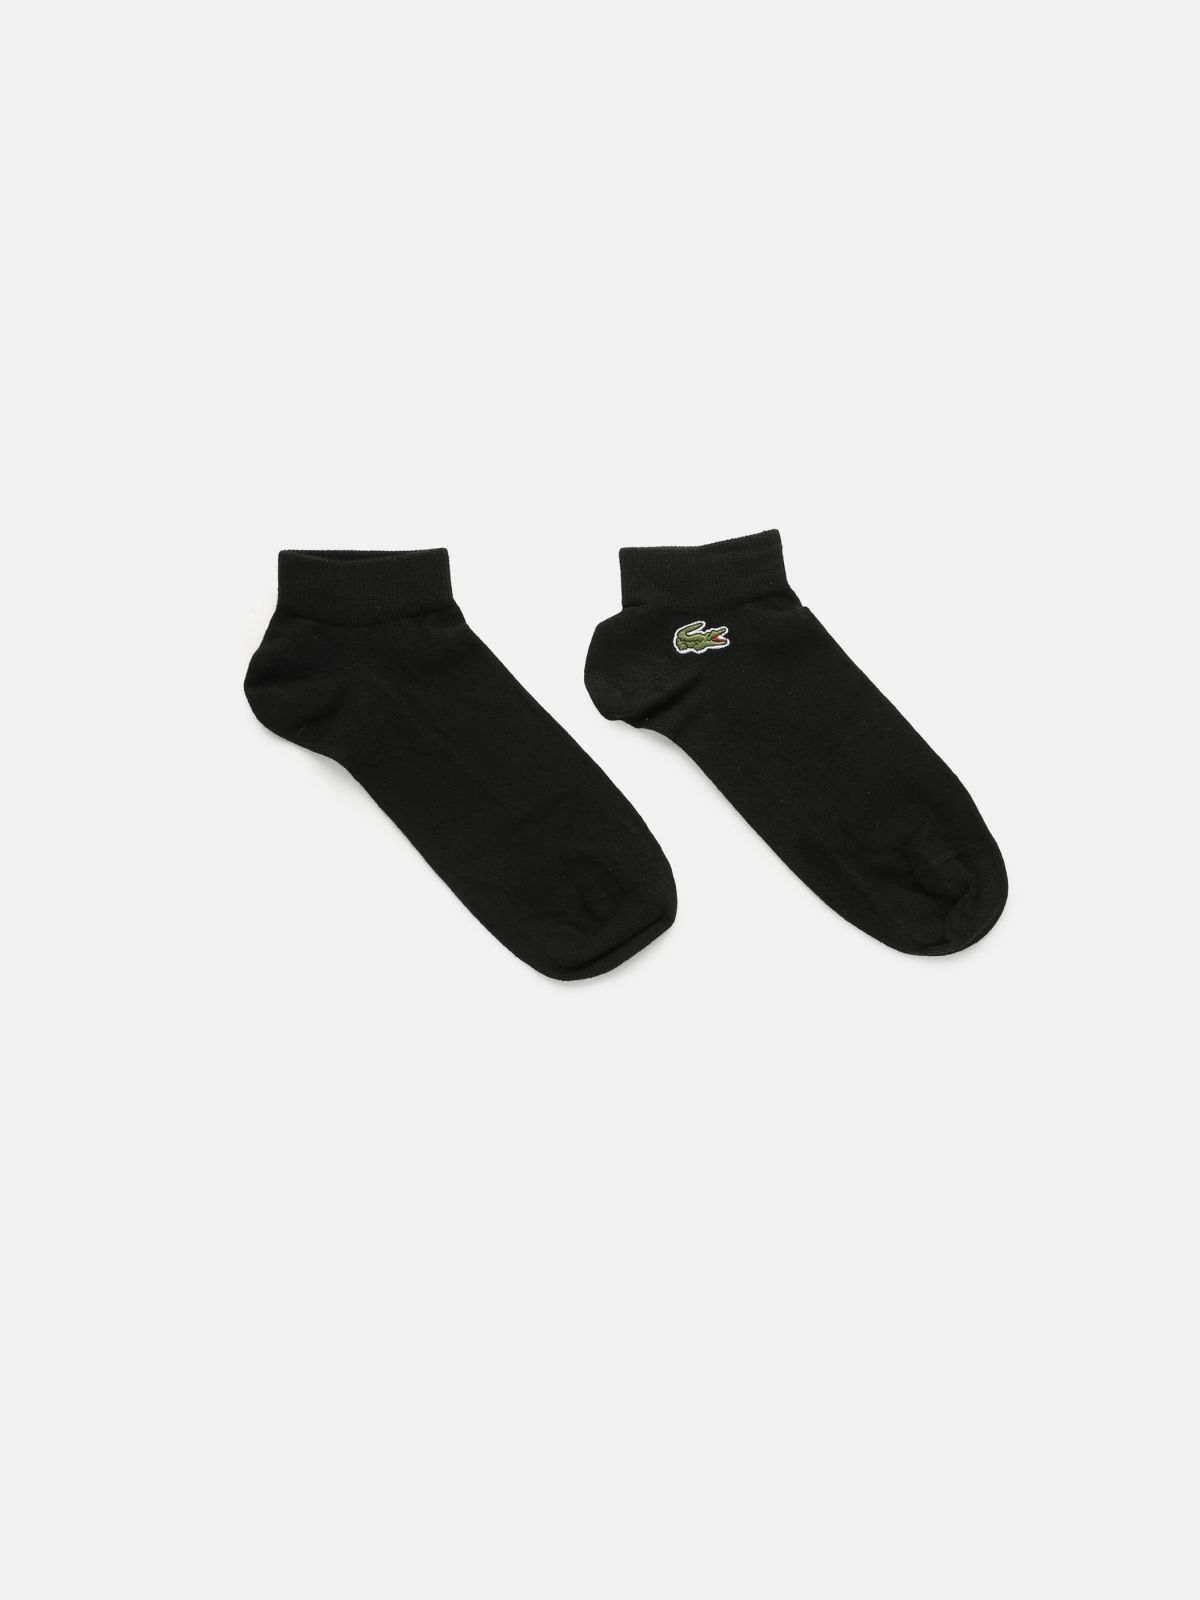  זוג גרביים עם לוגו / גברים של LACOSTE